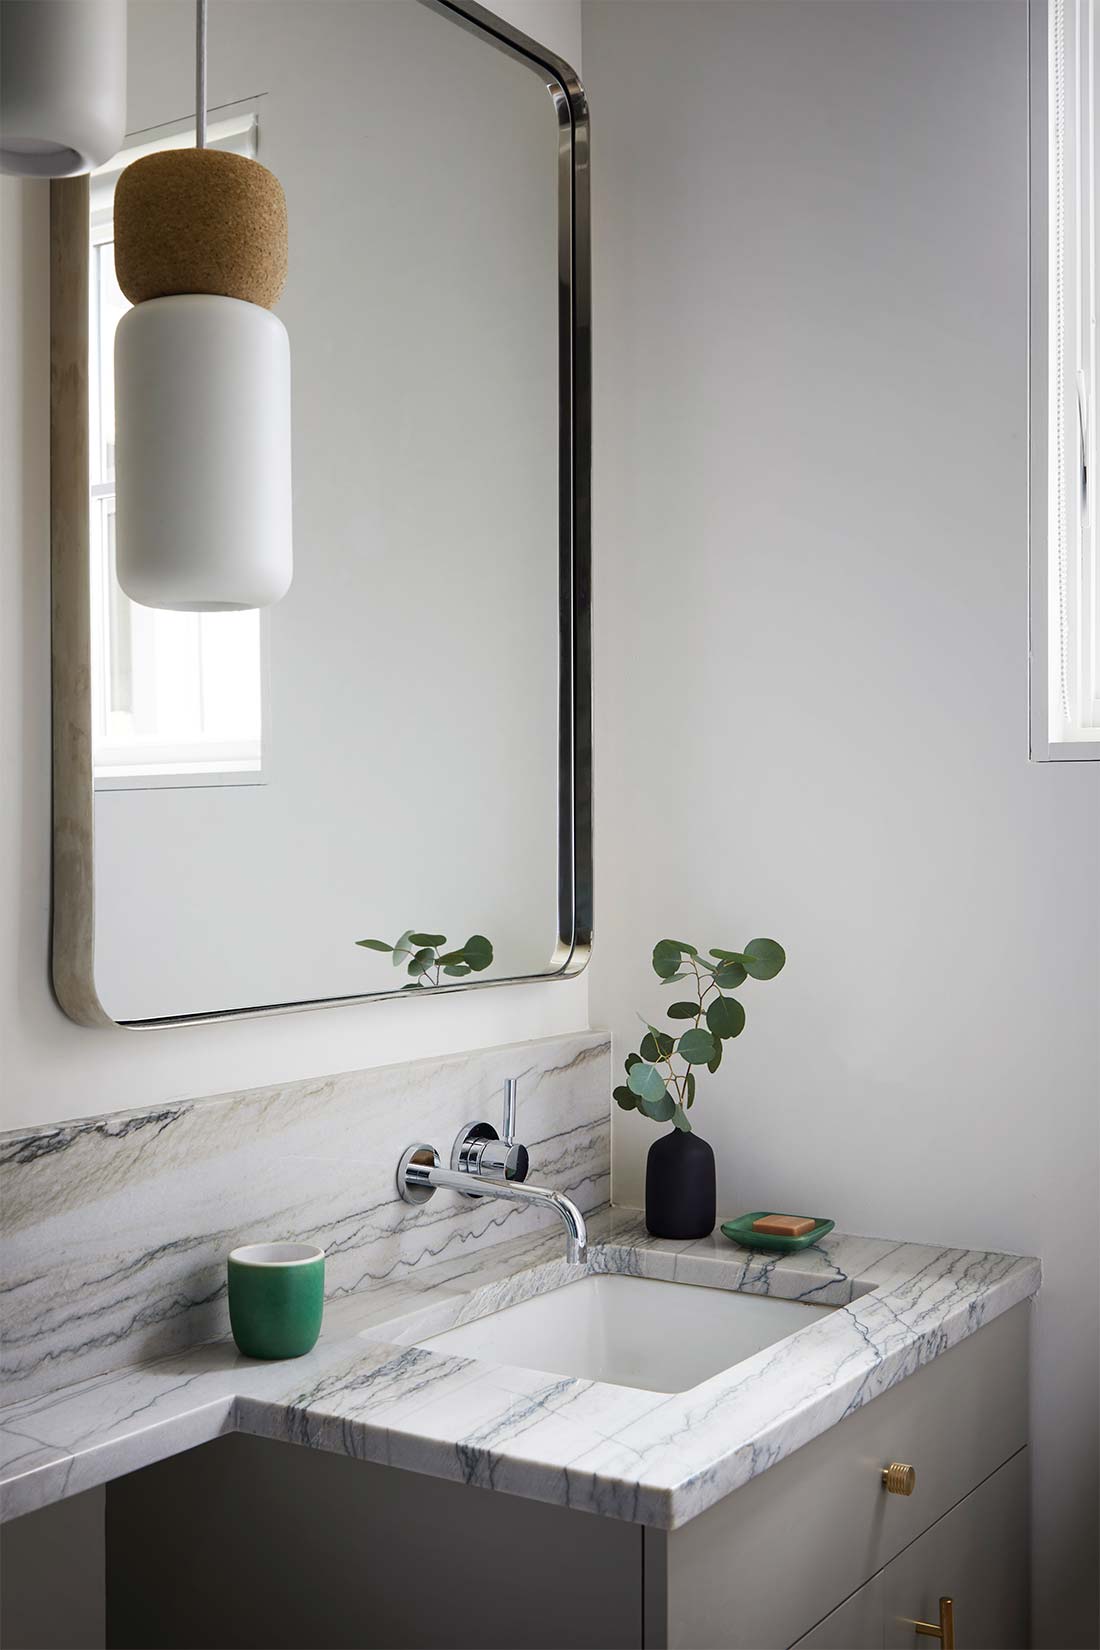 Bathroom Mirror, Sink, and Vanity, interior